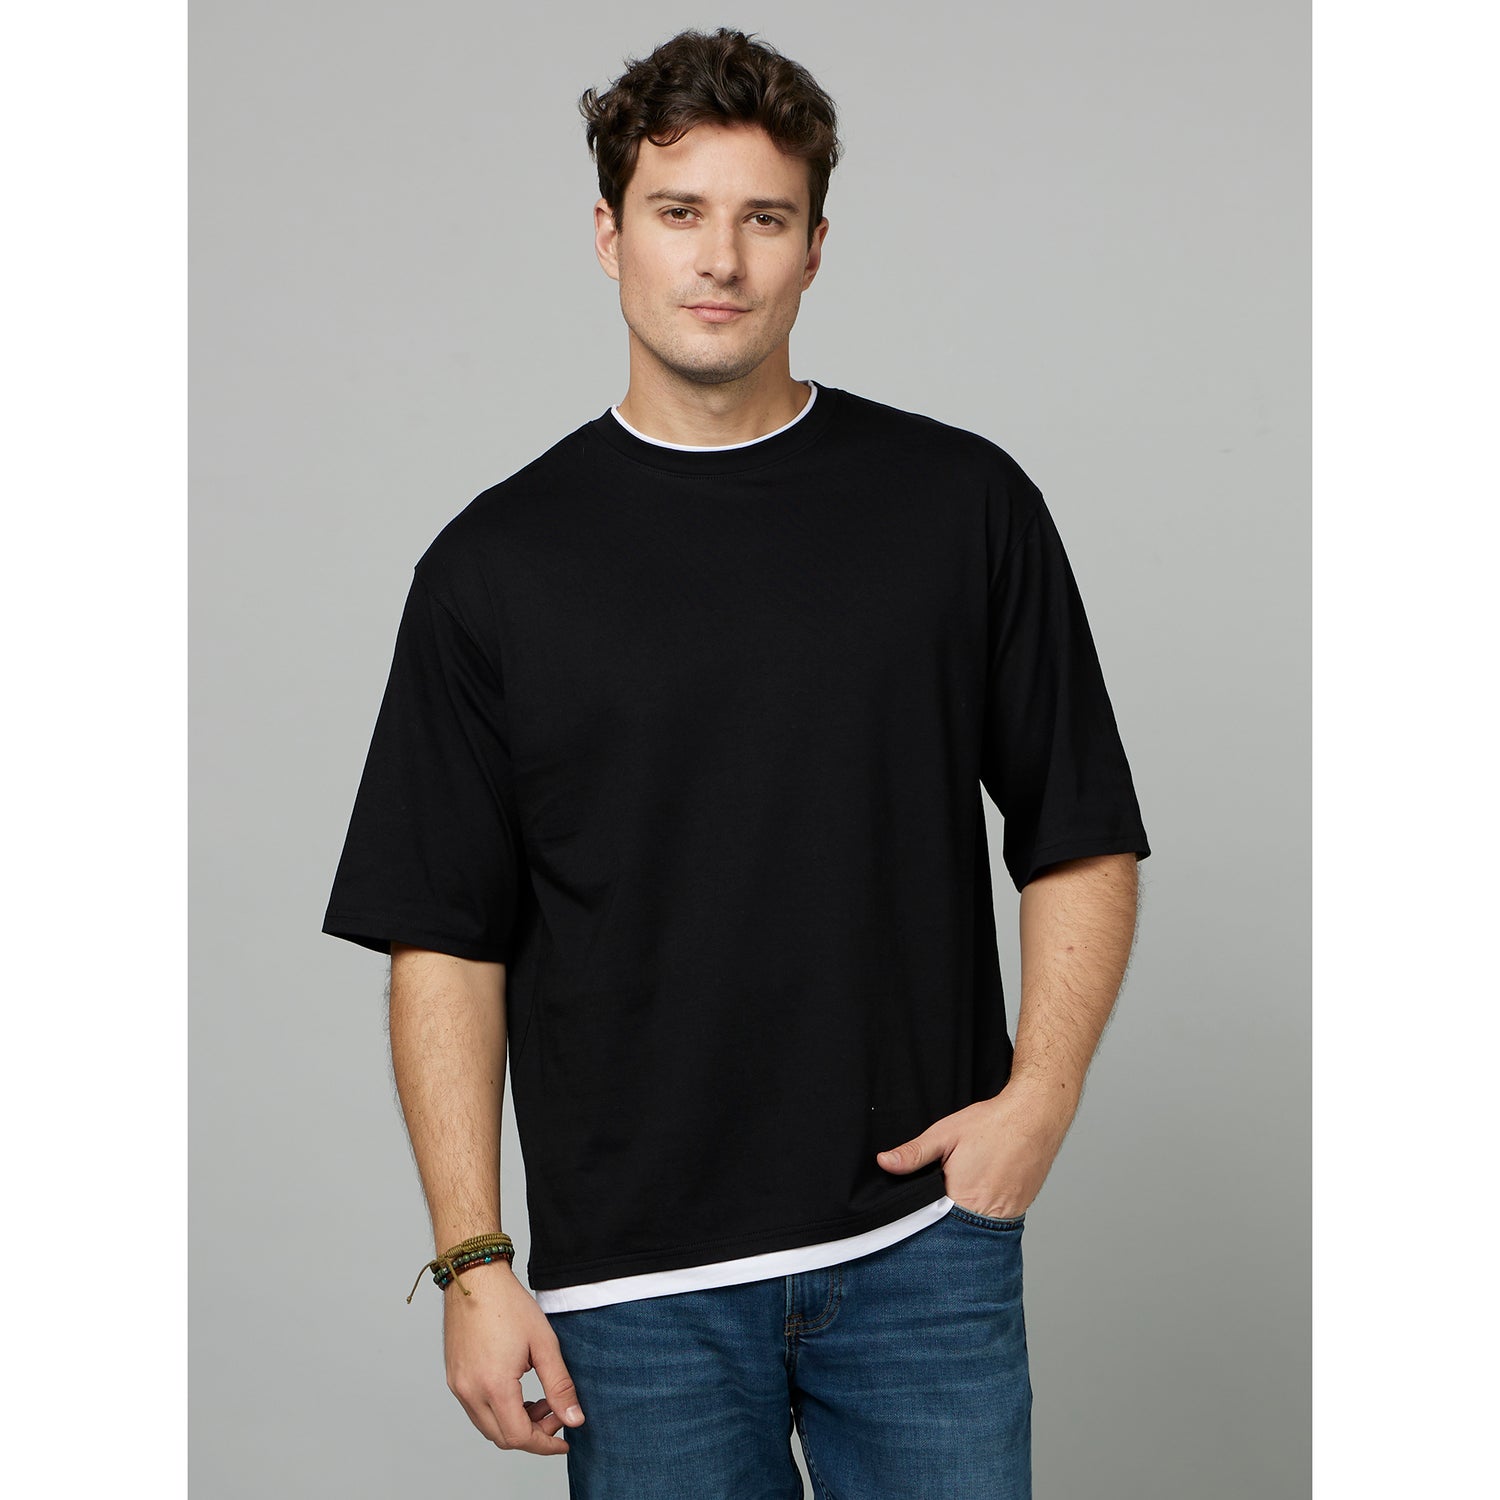 Black Drop-Shoulder Cotton T-shirt (FETWIN)